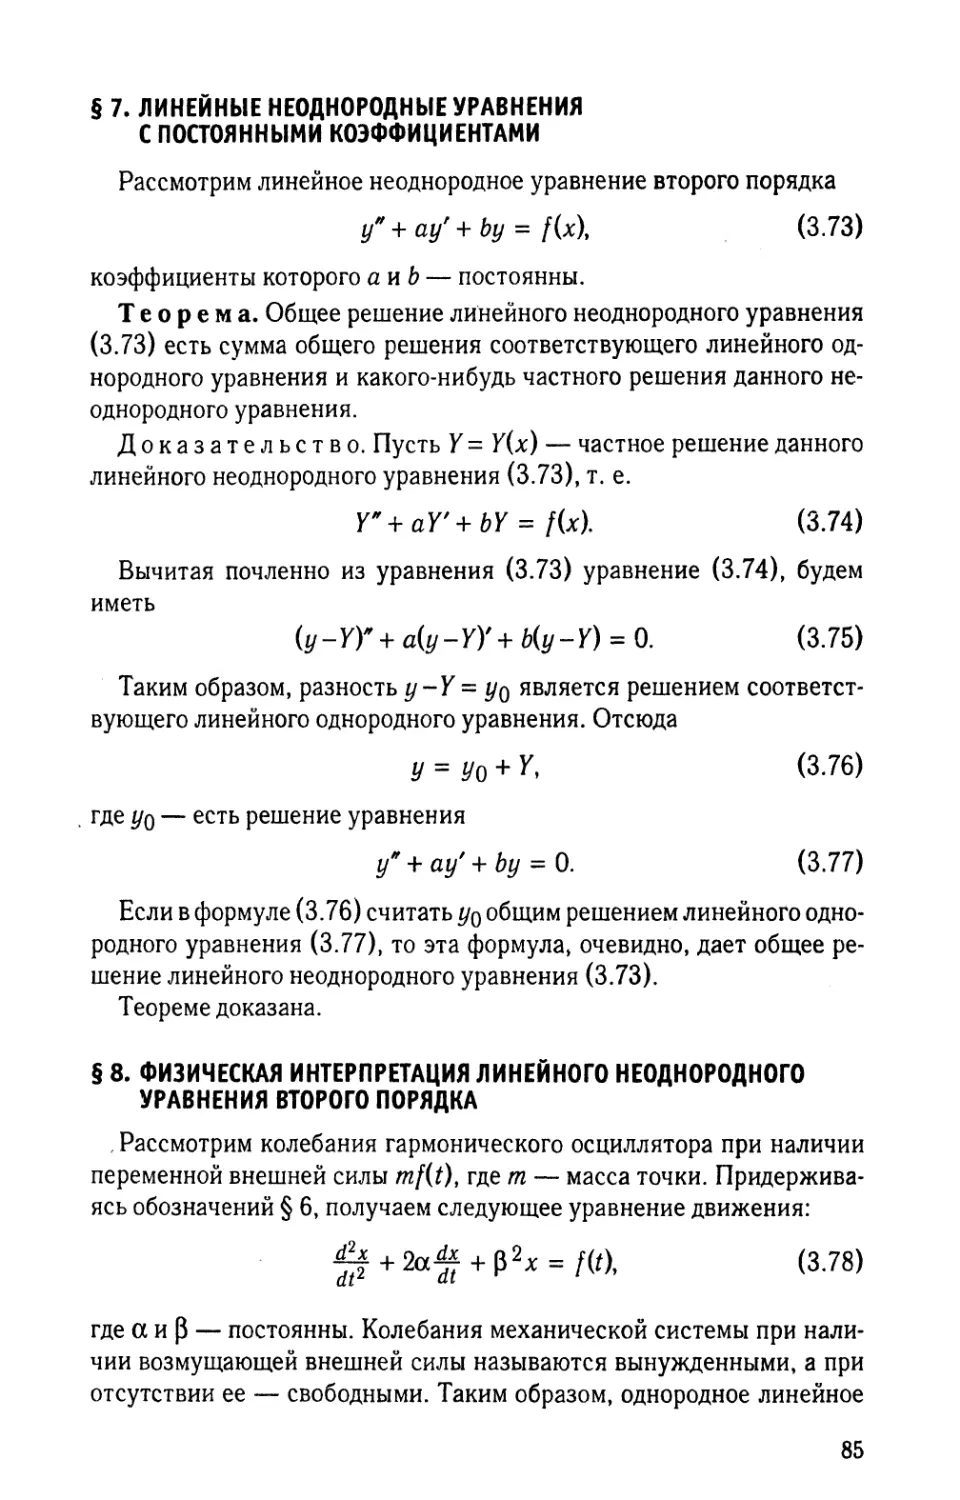 § 7. Линейные неоднородные уравнения с постоянными коэффициентами
§ 8. Физическая интерпретация линейного неоднородного уравнения второго порядка